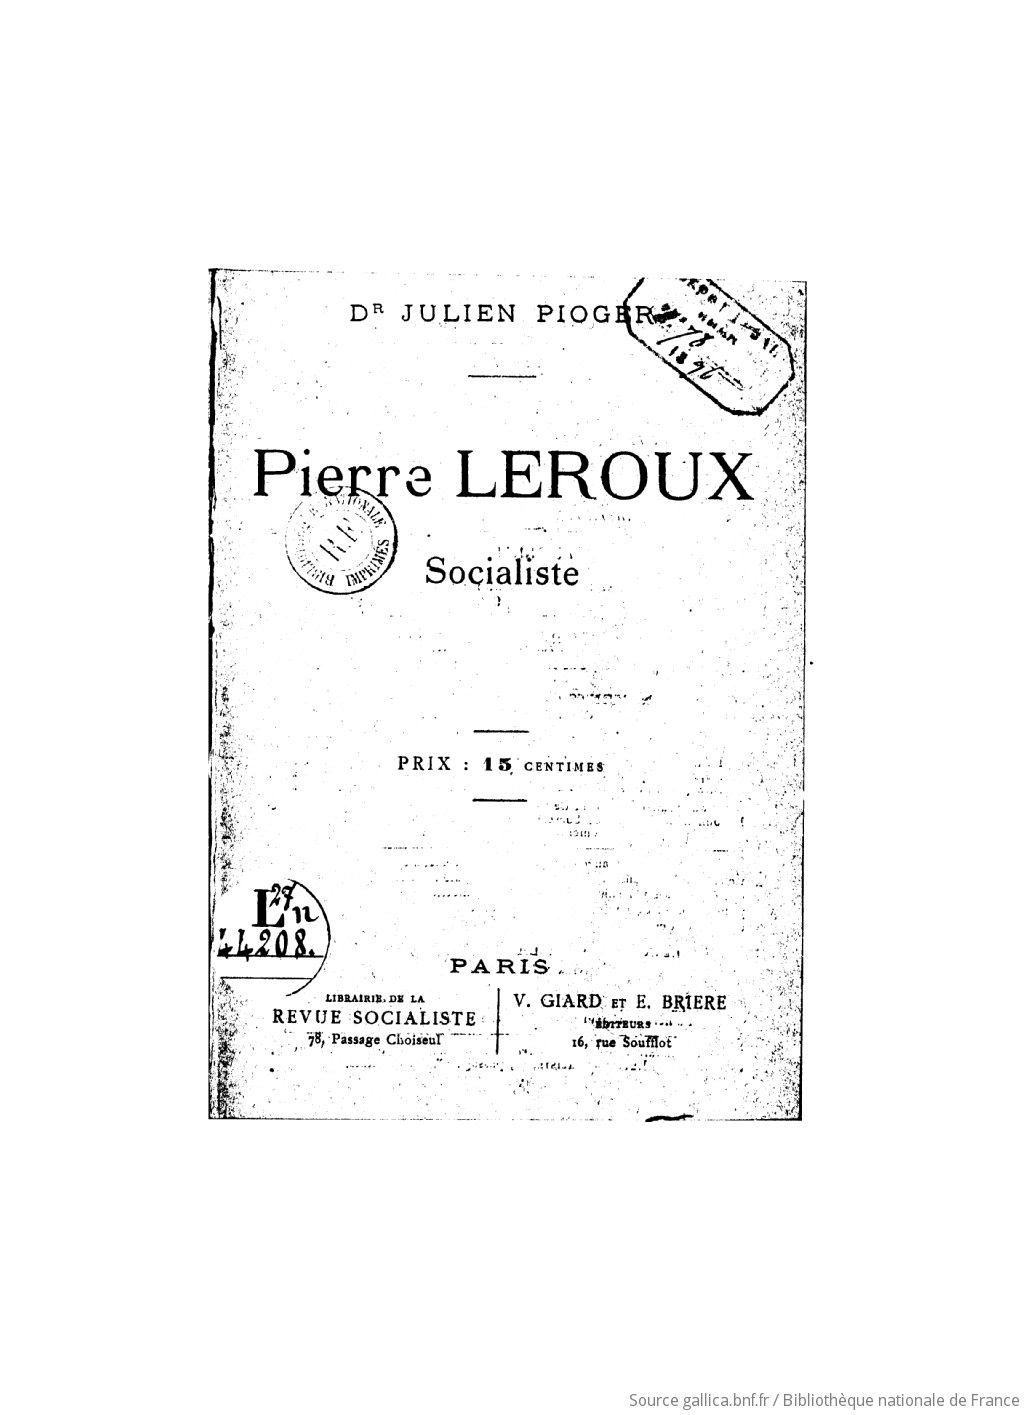 Pierre Leroux socialiste / Dr Julien Pioger | Gallica